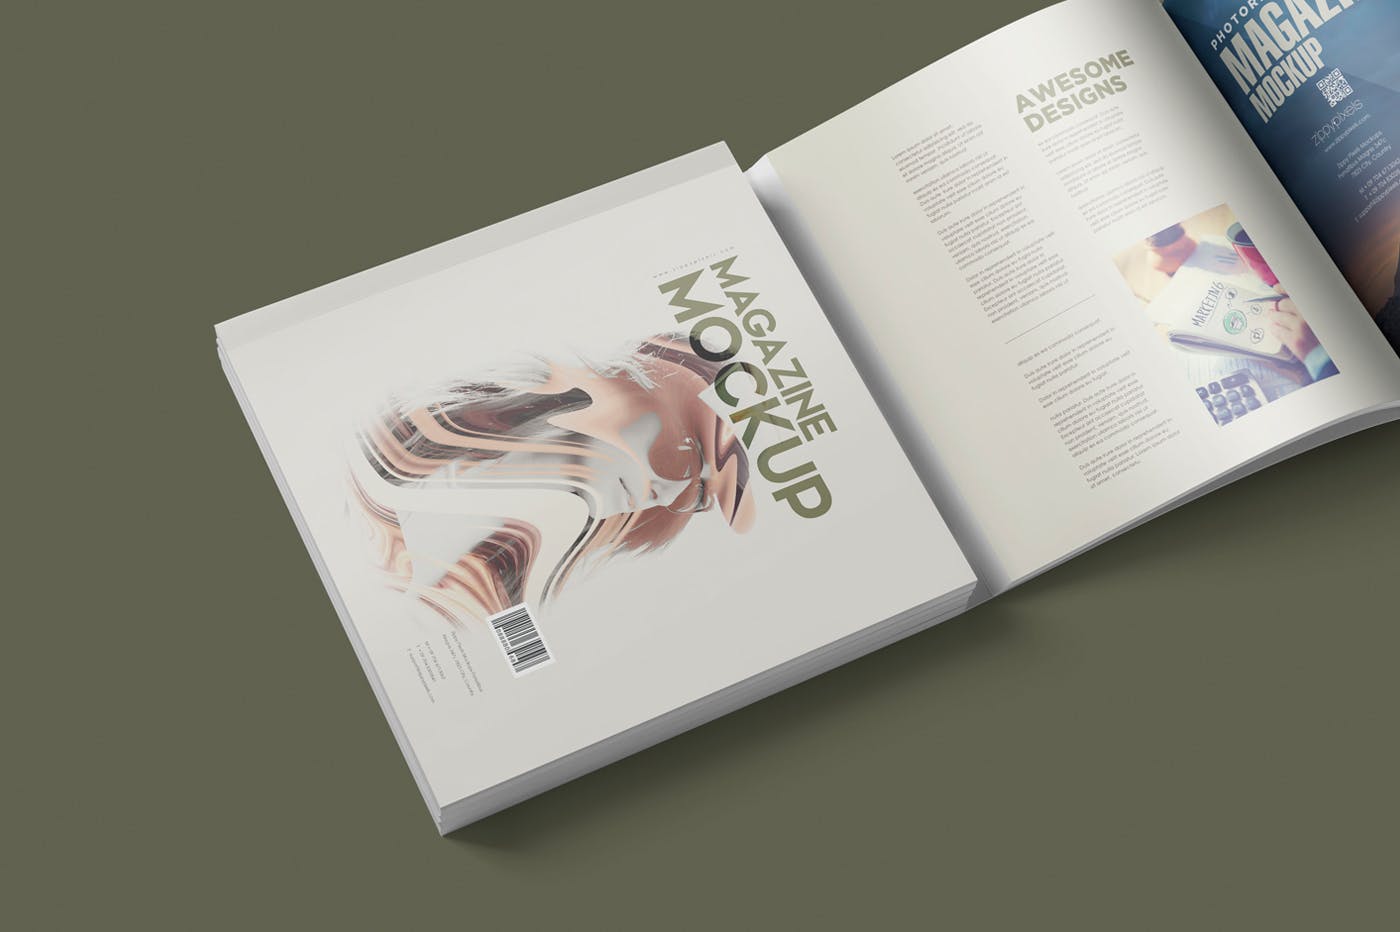 方形杂志印刷效果图样机素材库精选PSD模板 Square Magazine Mockup Set插图(3)